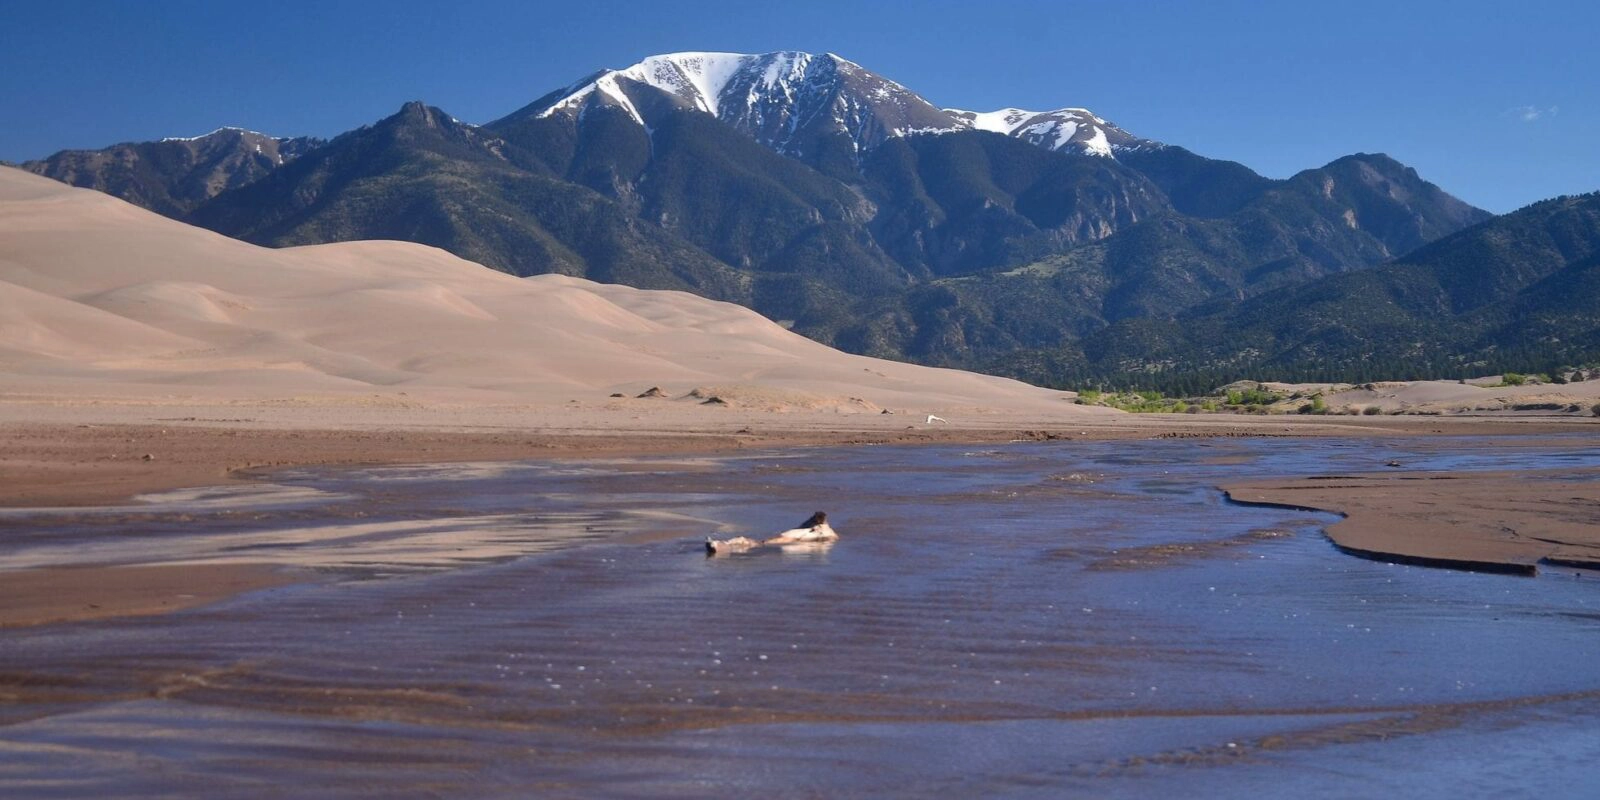  Colorado  strand - Nicaragua